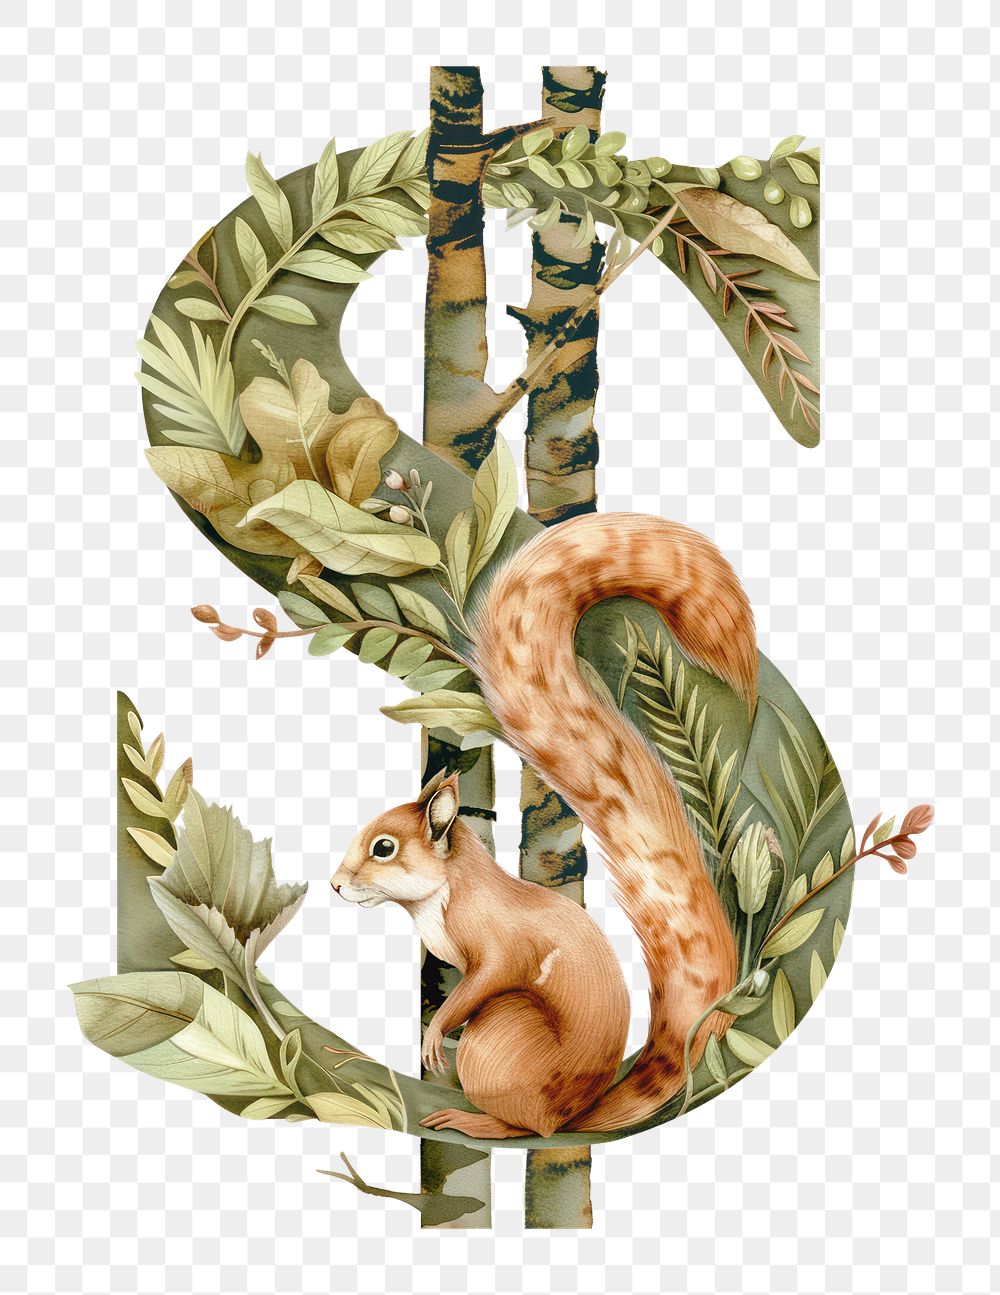 Dollar sign png botanical art symbol, transparent background